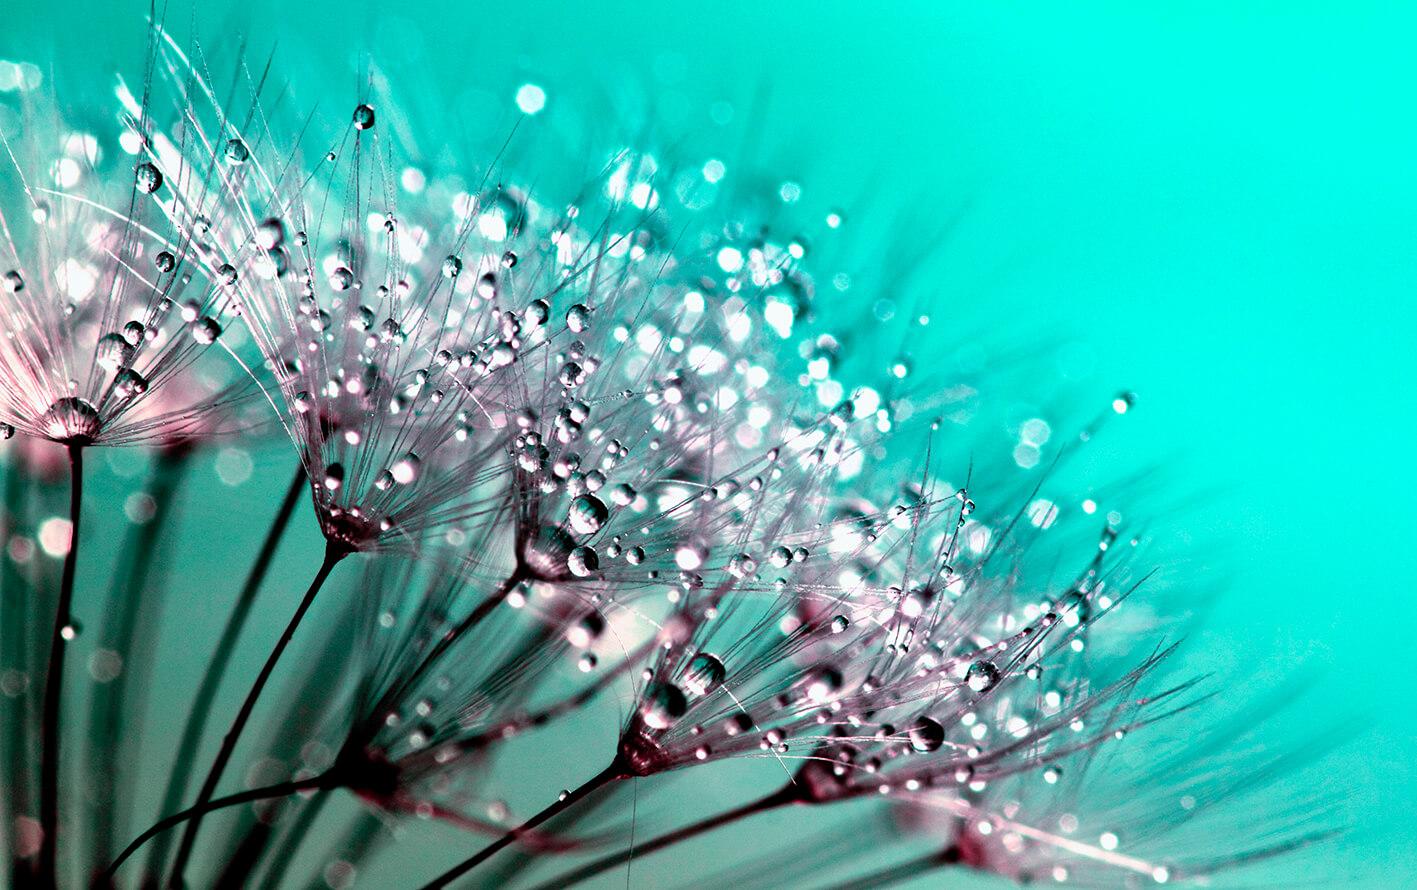 Dandelion macro photography